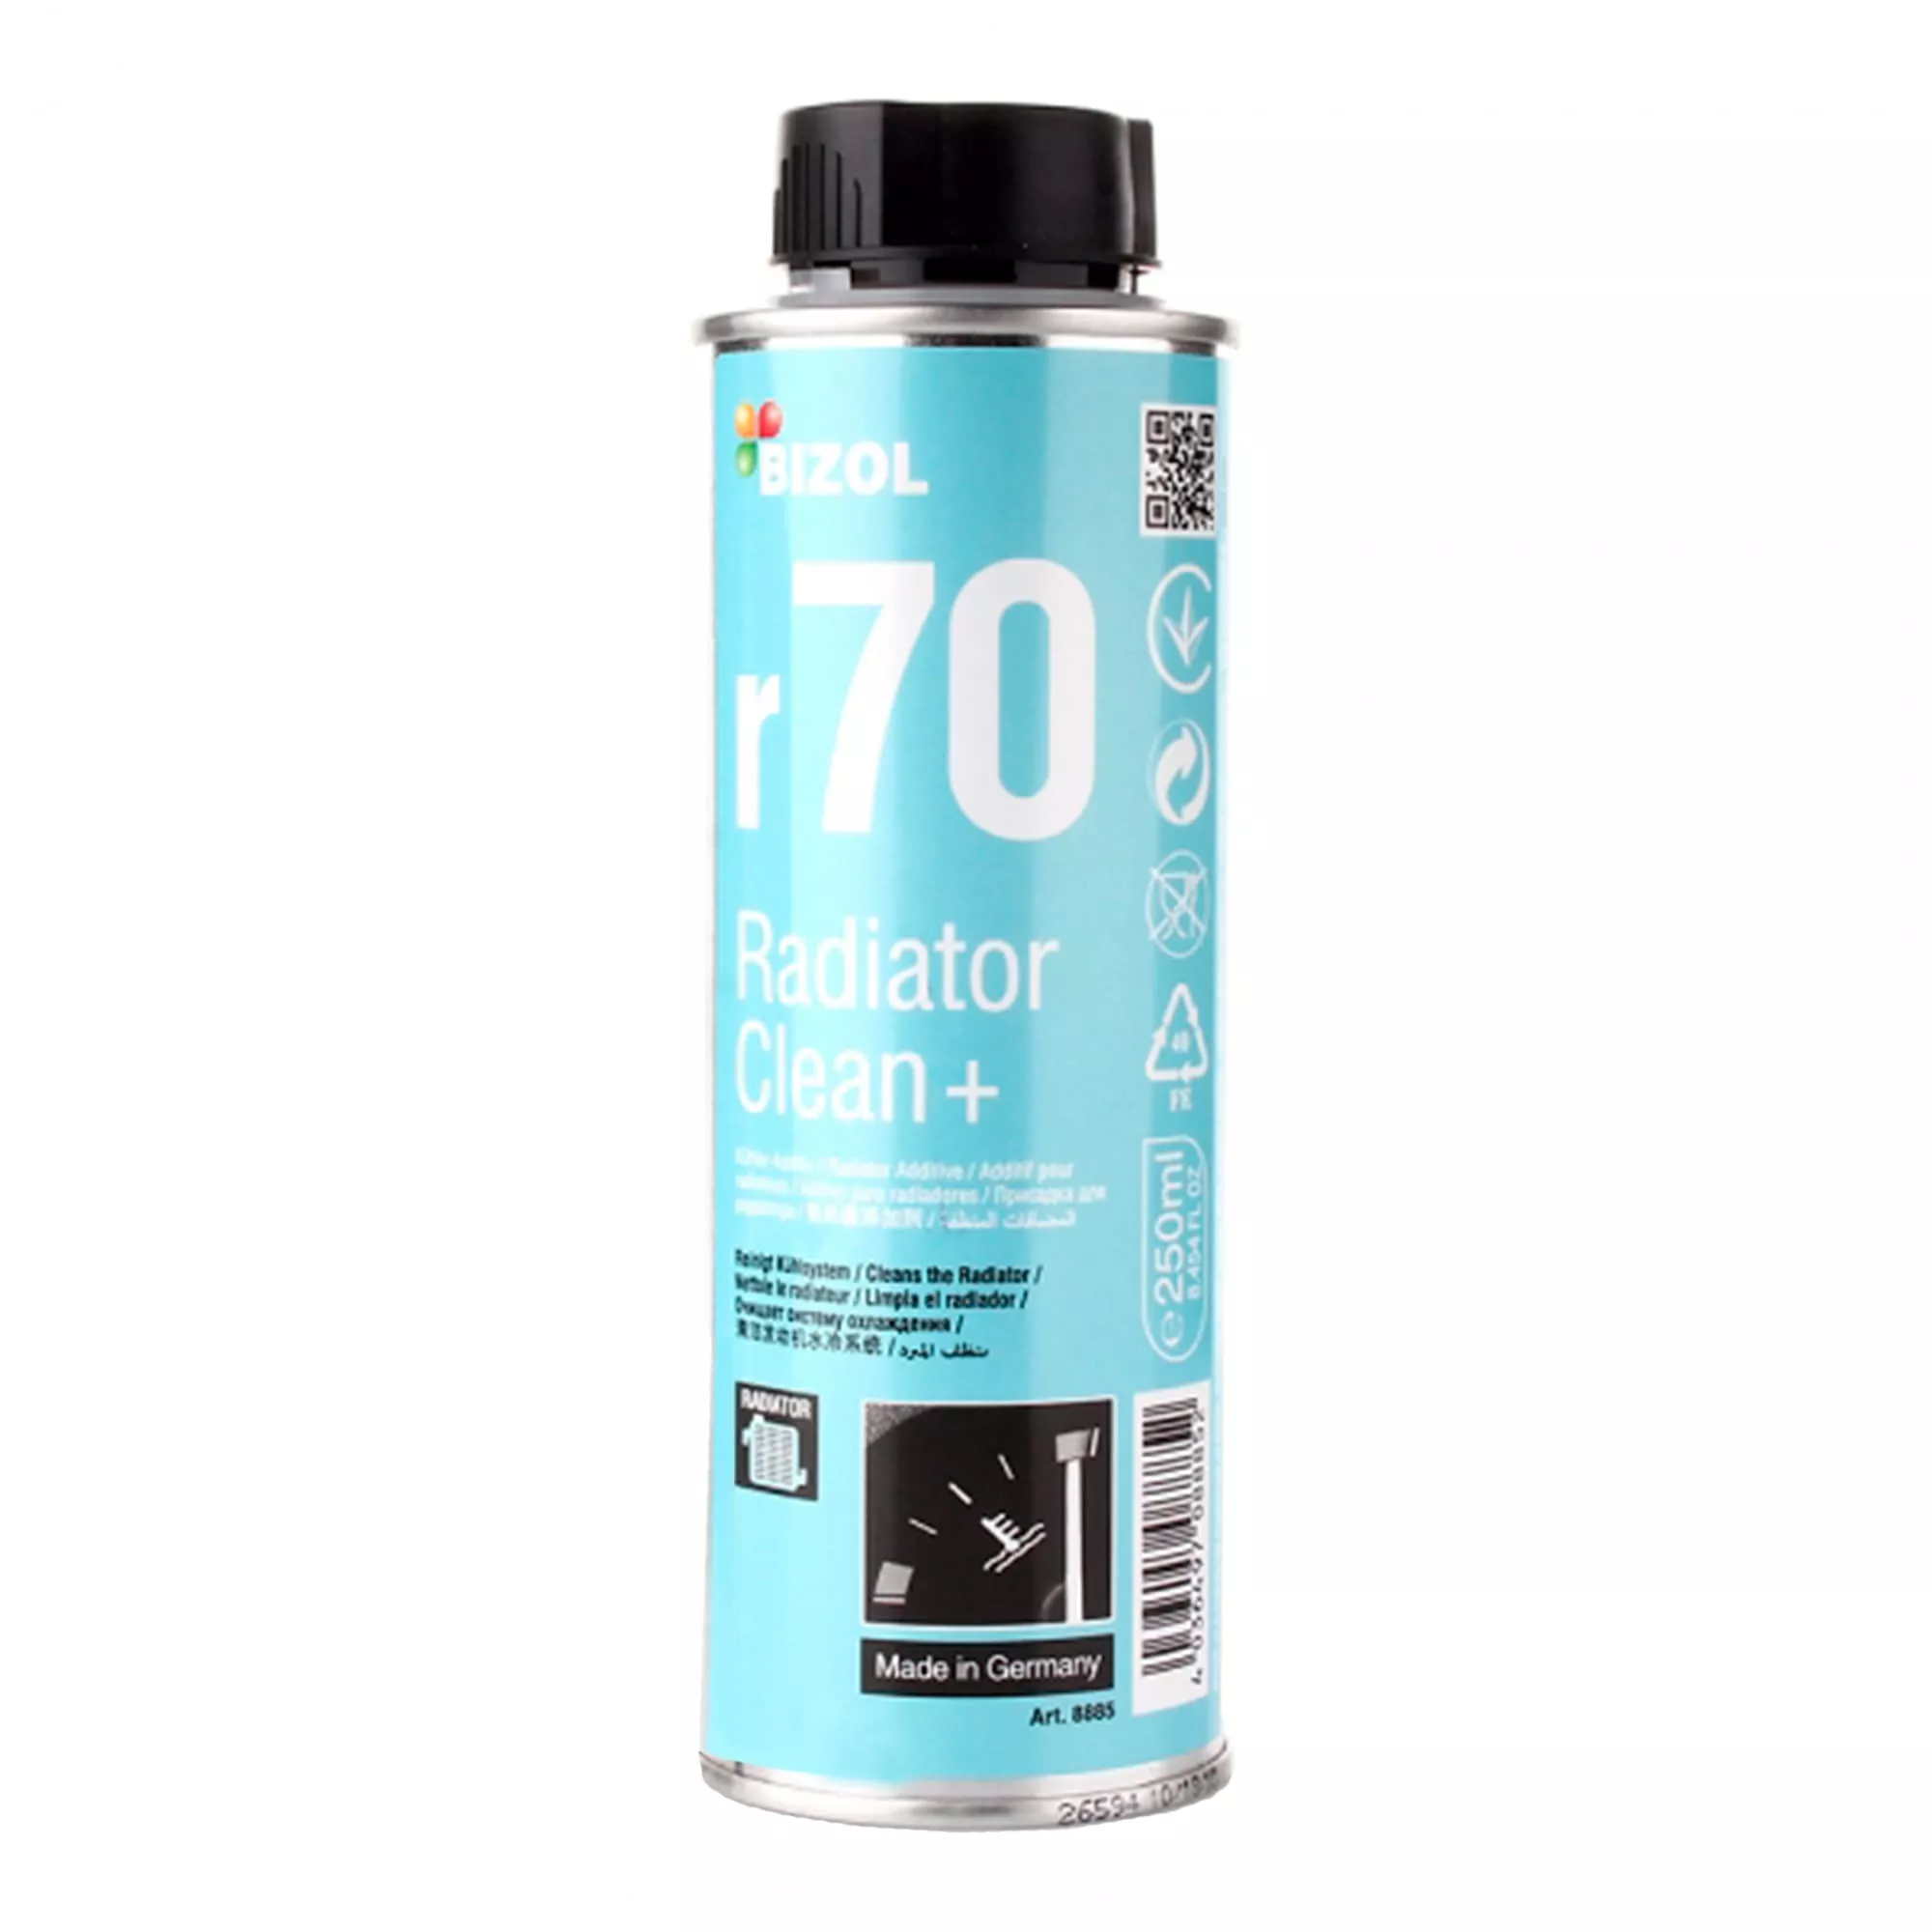 Промывка радиатора BIZOL Radiator Clean очиститель системы охлаждения + r70 0,25 л (B98885)